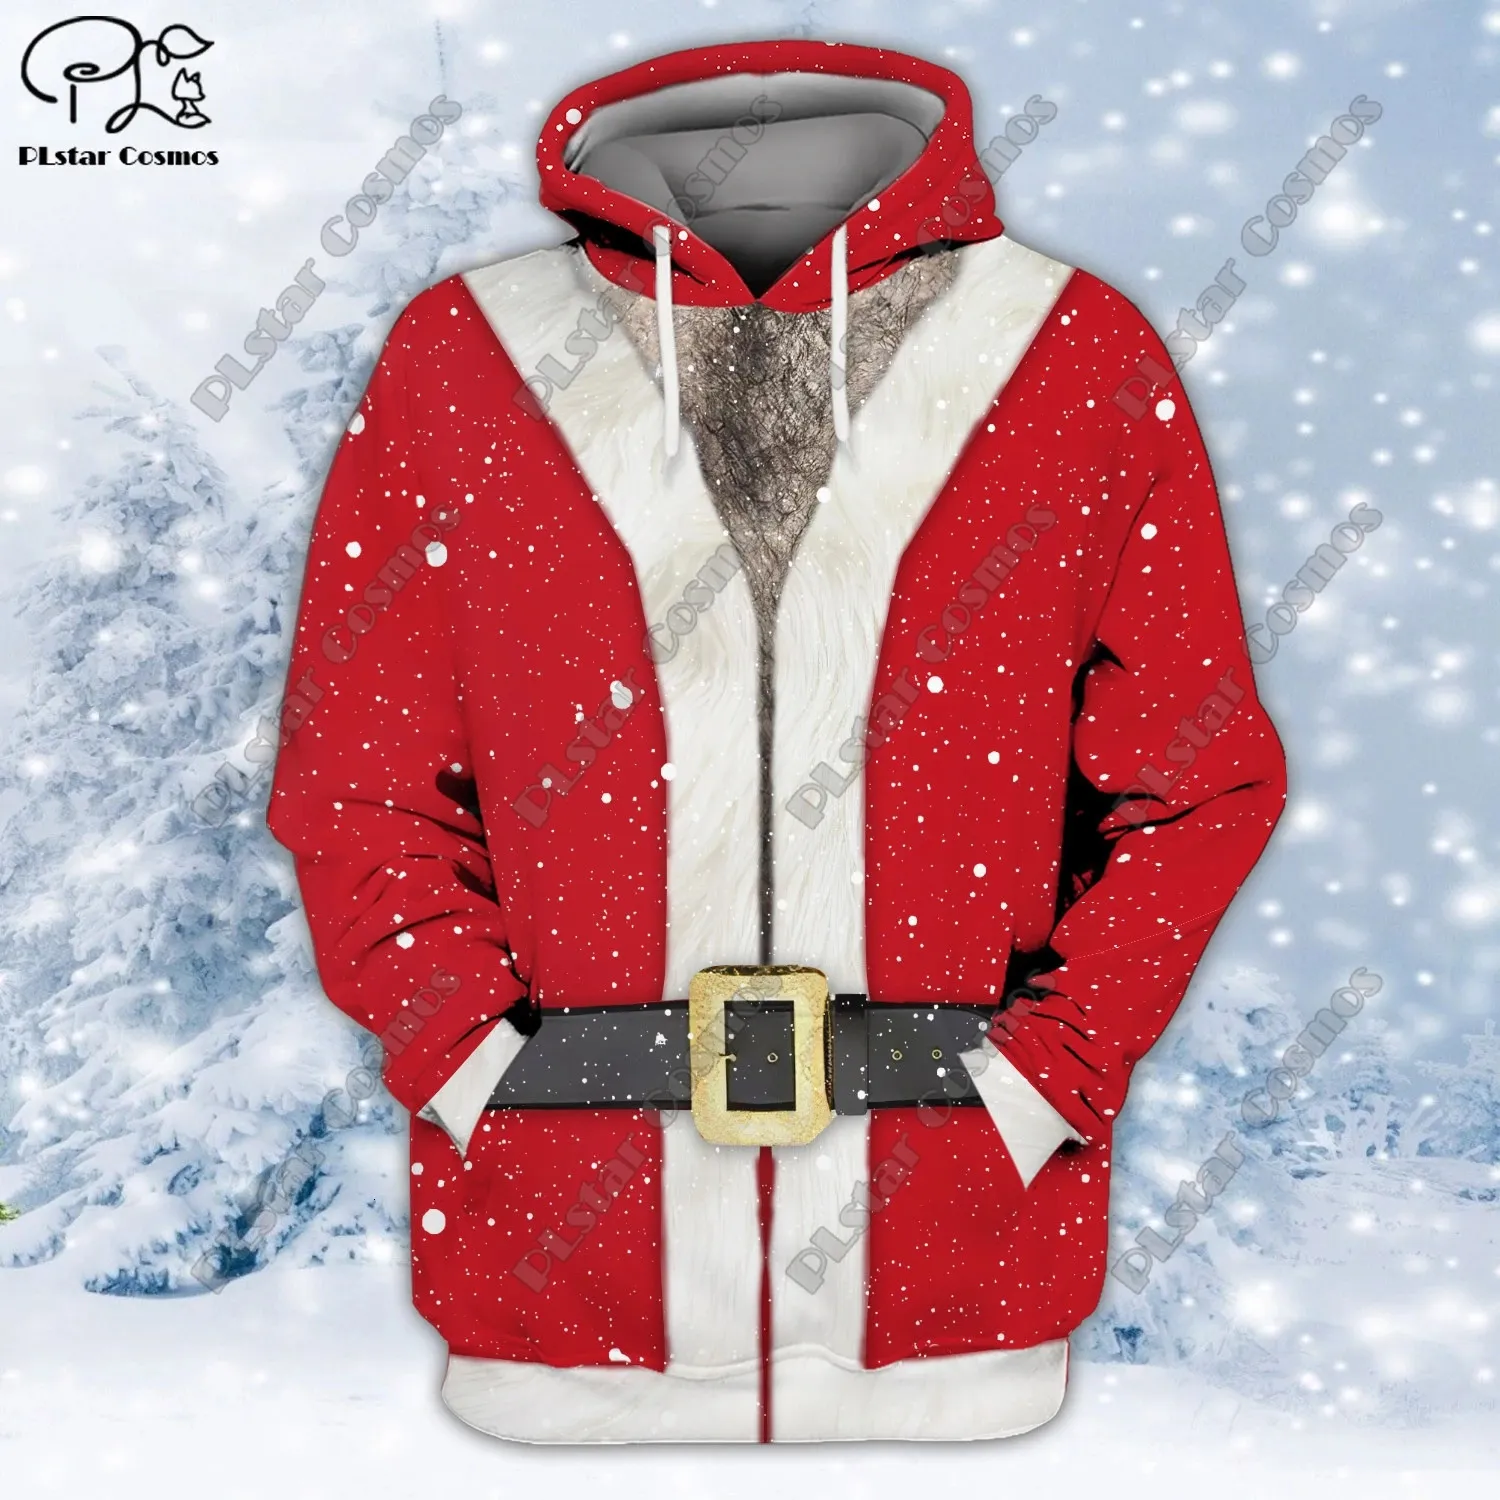 Herrtröjor tröjor plstar kosmos 3d tryckt julsamling grafisk tryck unisex kläder rolig casual hoodie/sweatshirt/zip/jacka/t-shirt s-3 231205